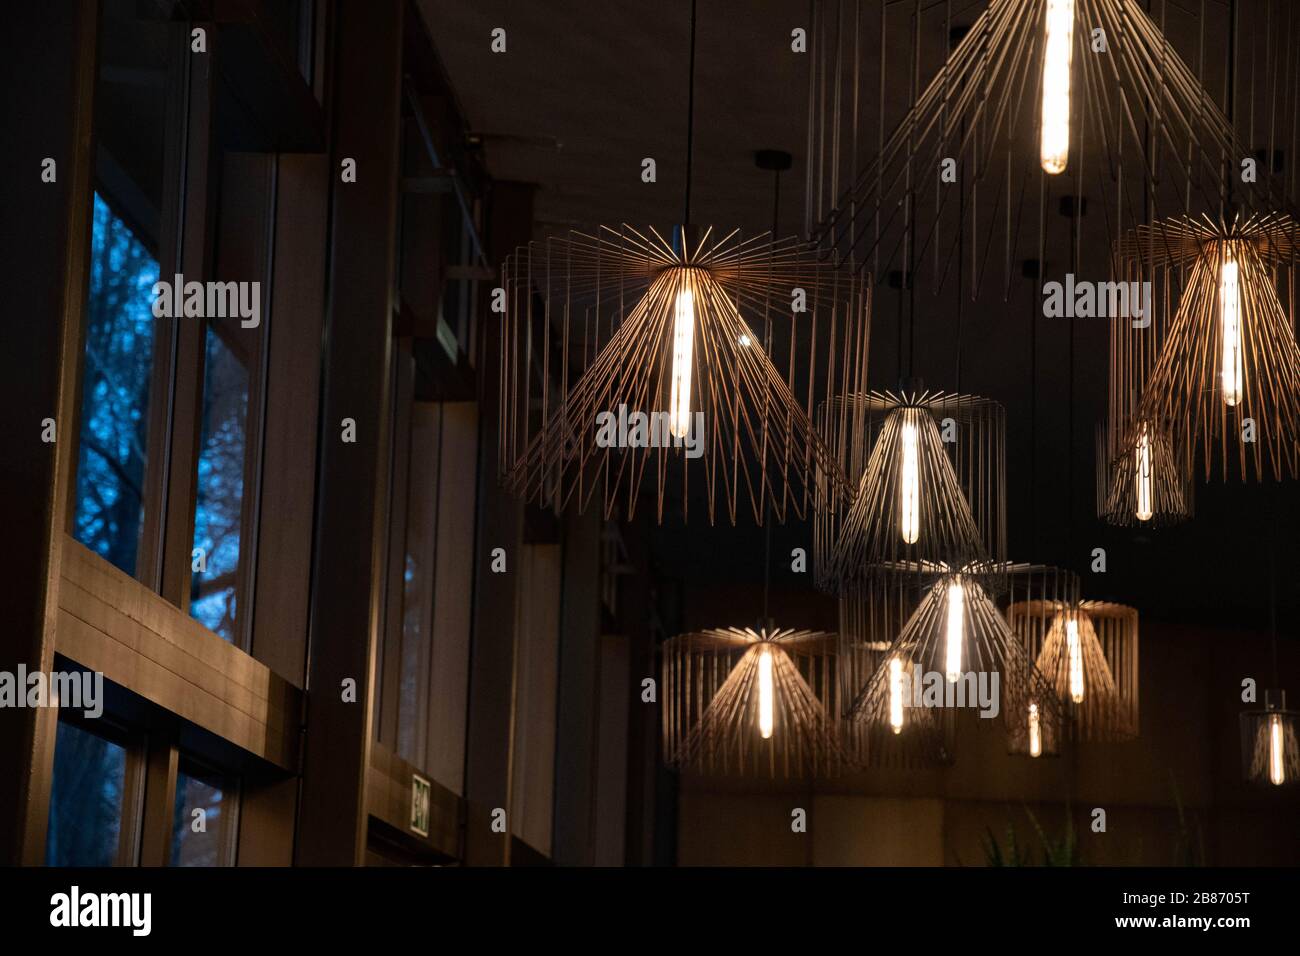 Drahtlüster in der Nähe von Fenstern. Moderne Lampenschirme aus Metall.  Lampen mit lang glühenden Glühbirnen. Geometrische Drahtformen in  verschiedenen Größen. Innen Stockfotografie - Alamy